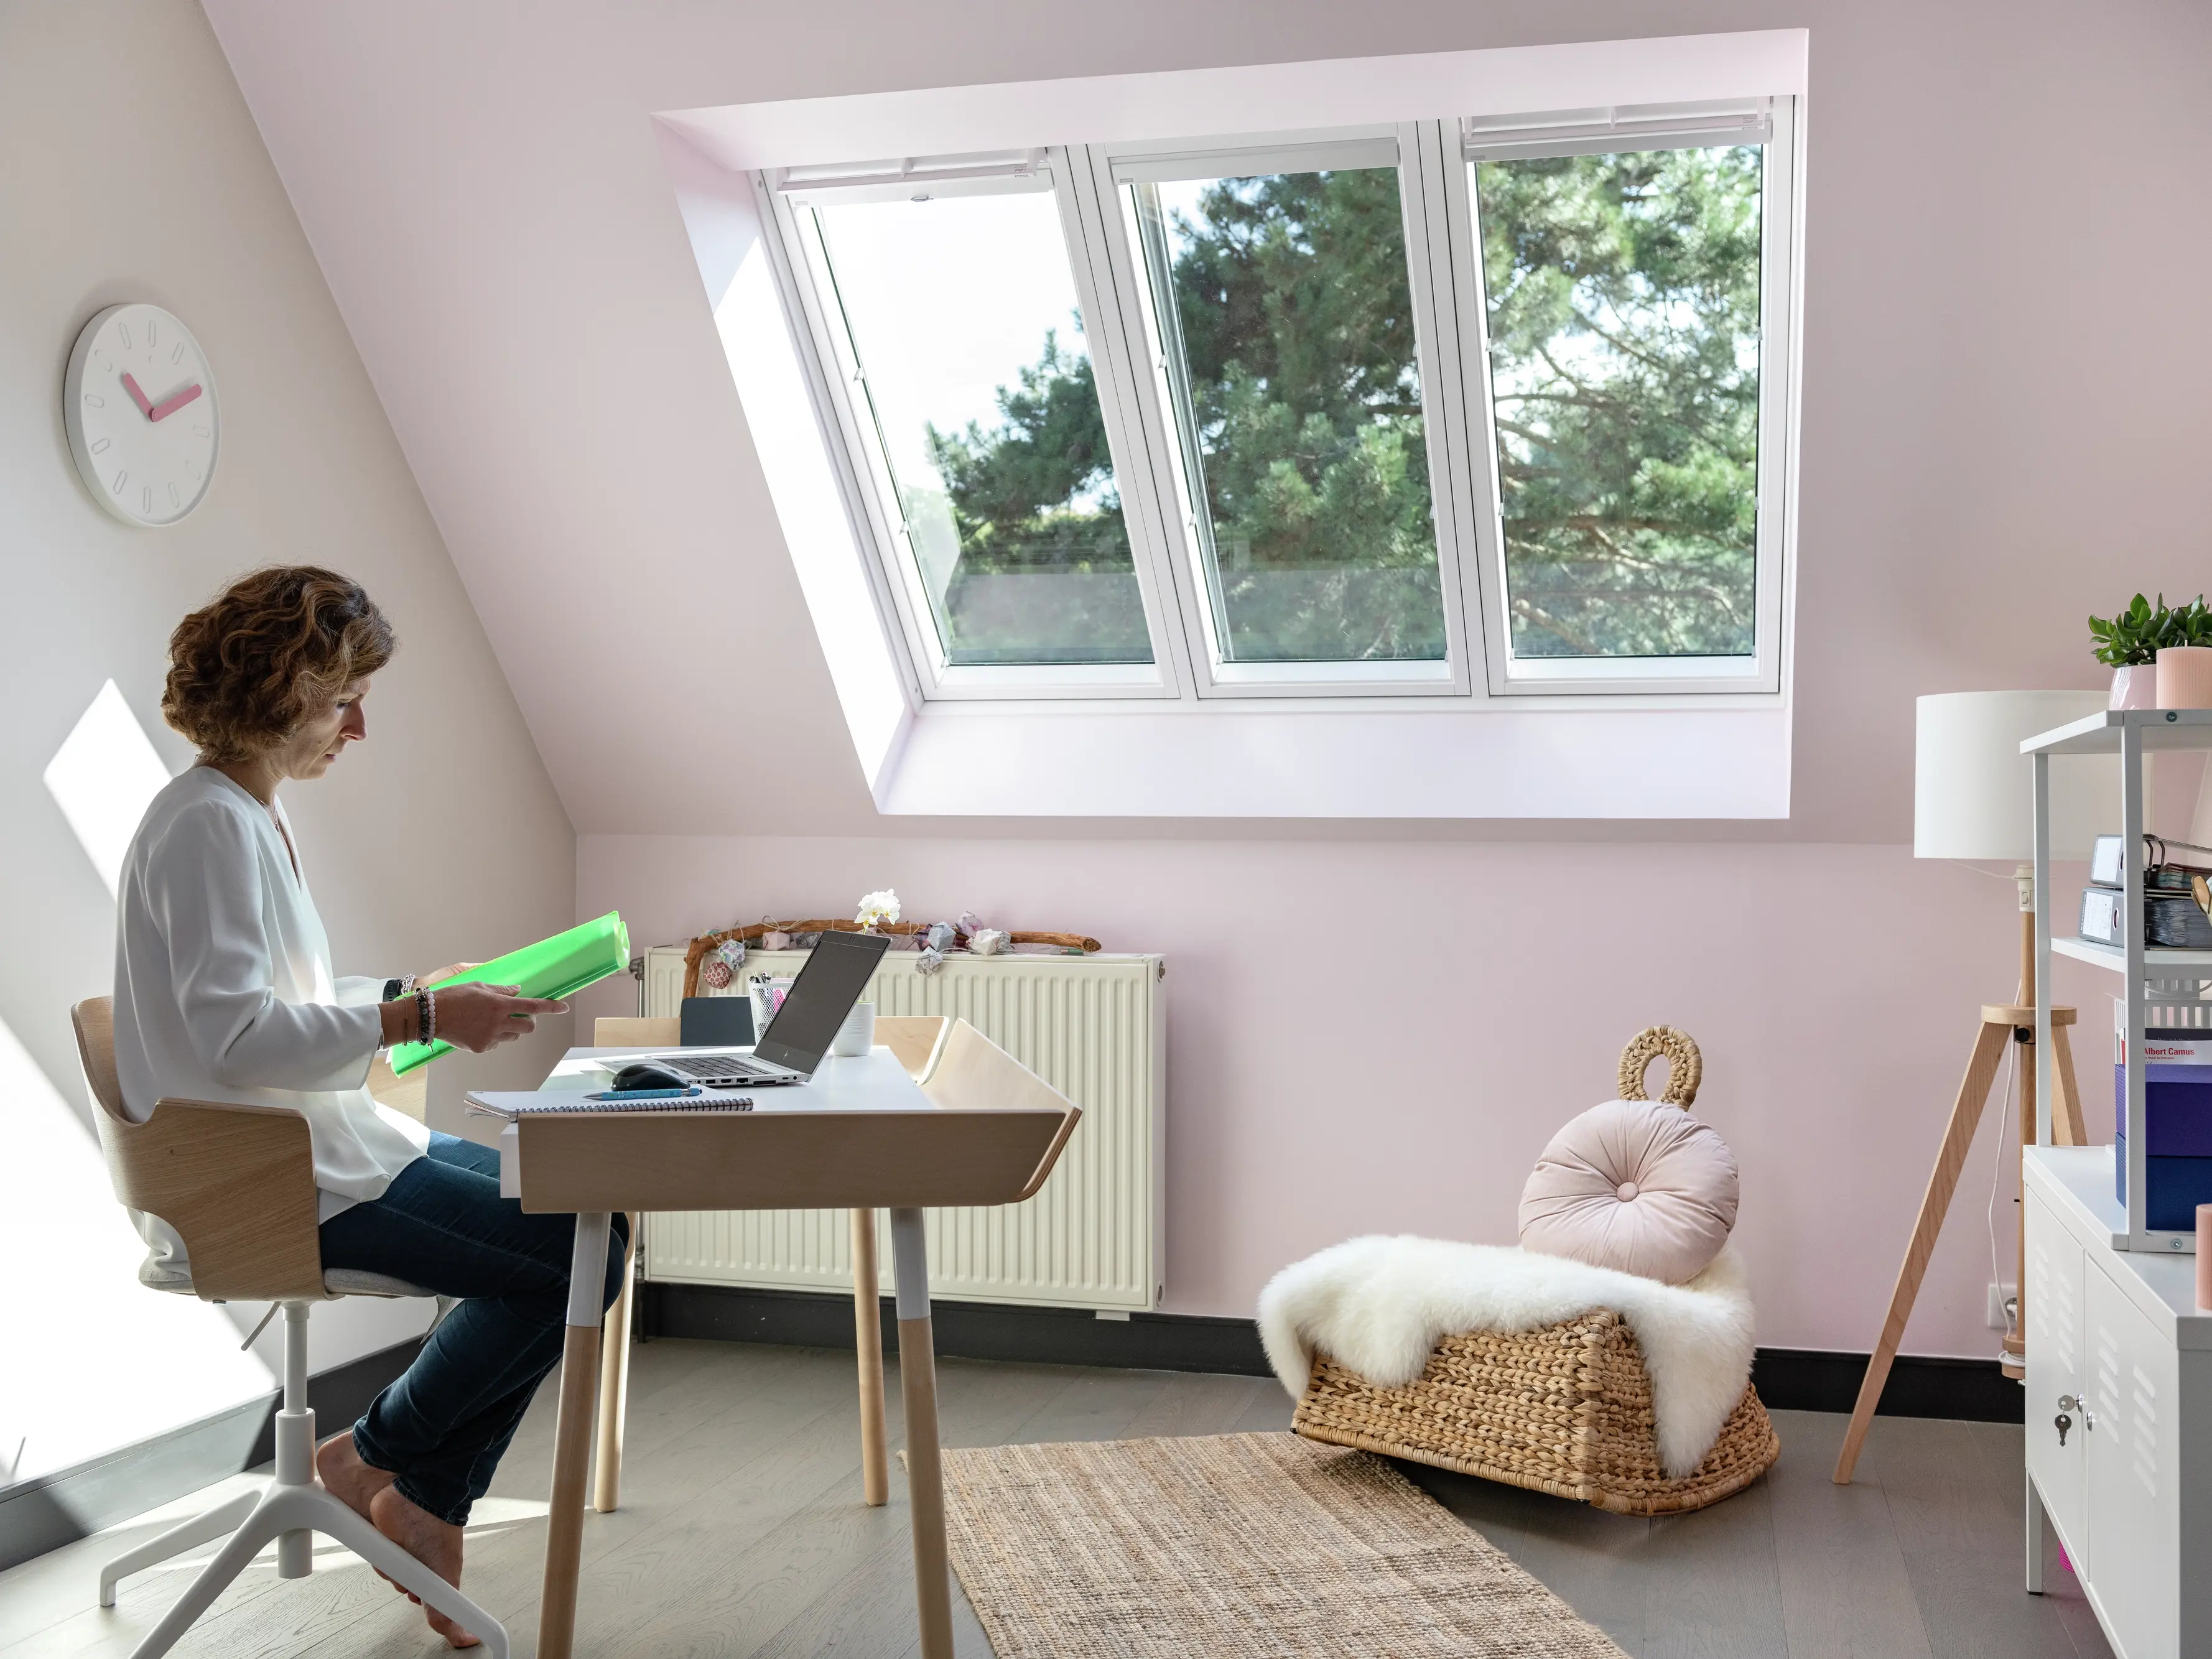 Une femme concentrée sur la lecture dans un bureau à domicile avec des murs roses, une fenêtre de toit, et un décor minimaliste comprenant une chaise tissée et des plantes vertes.